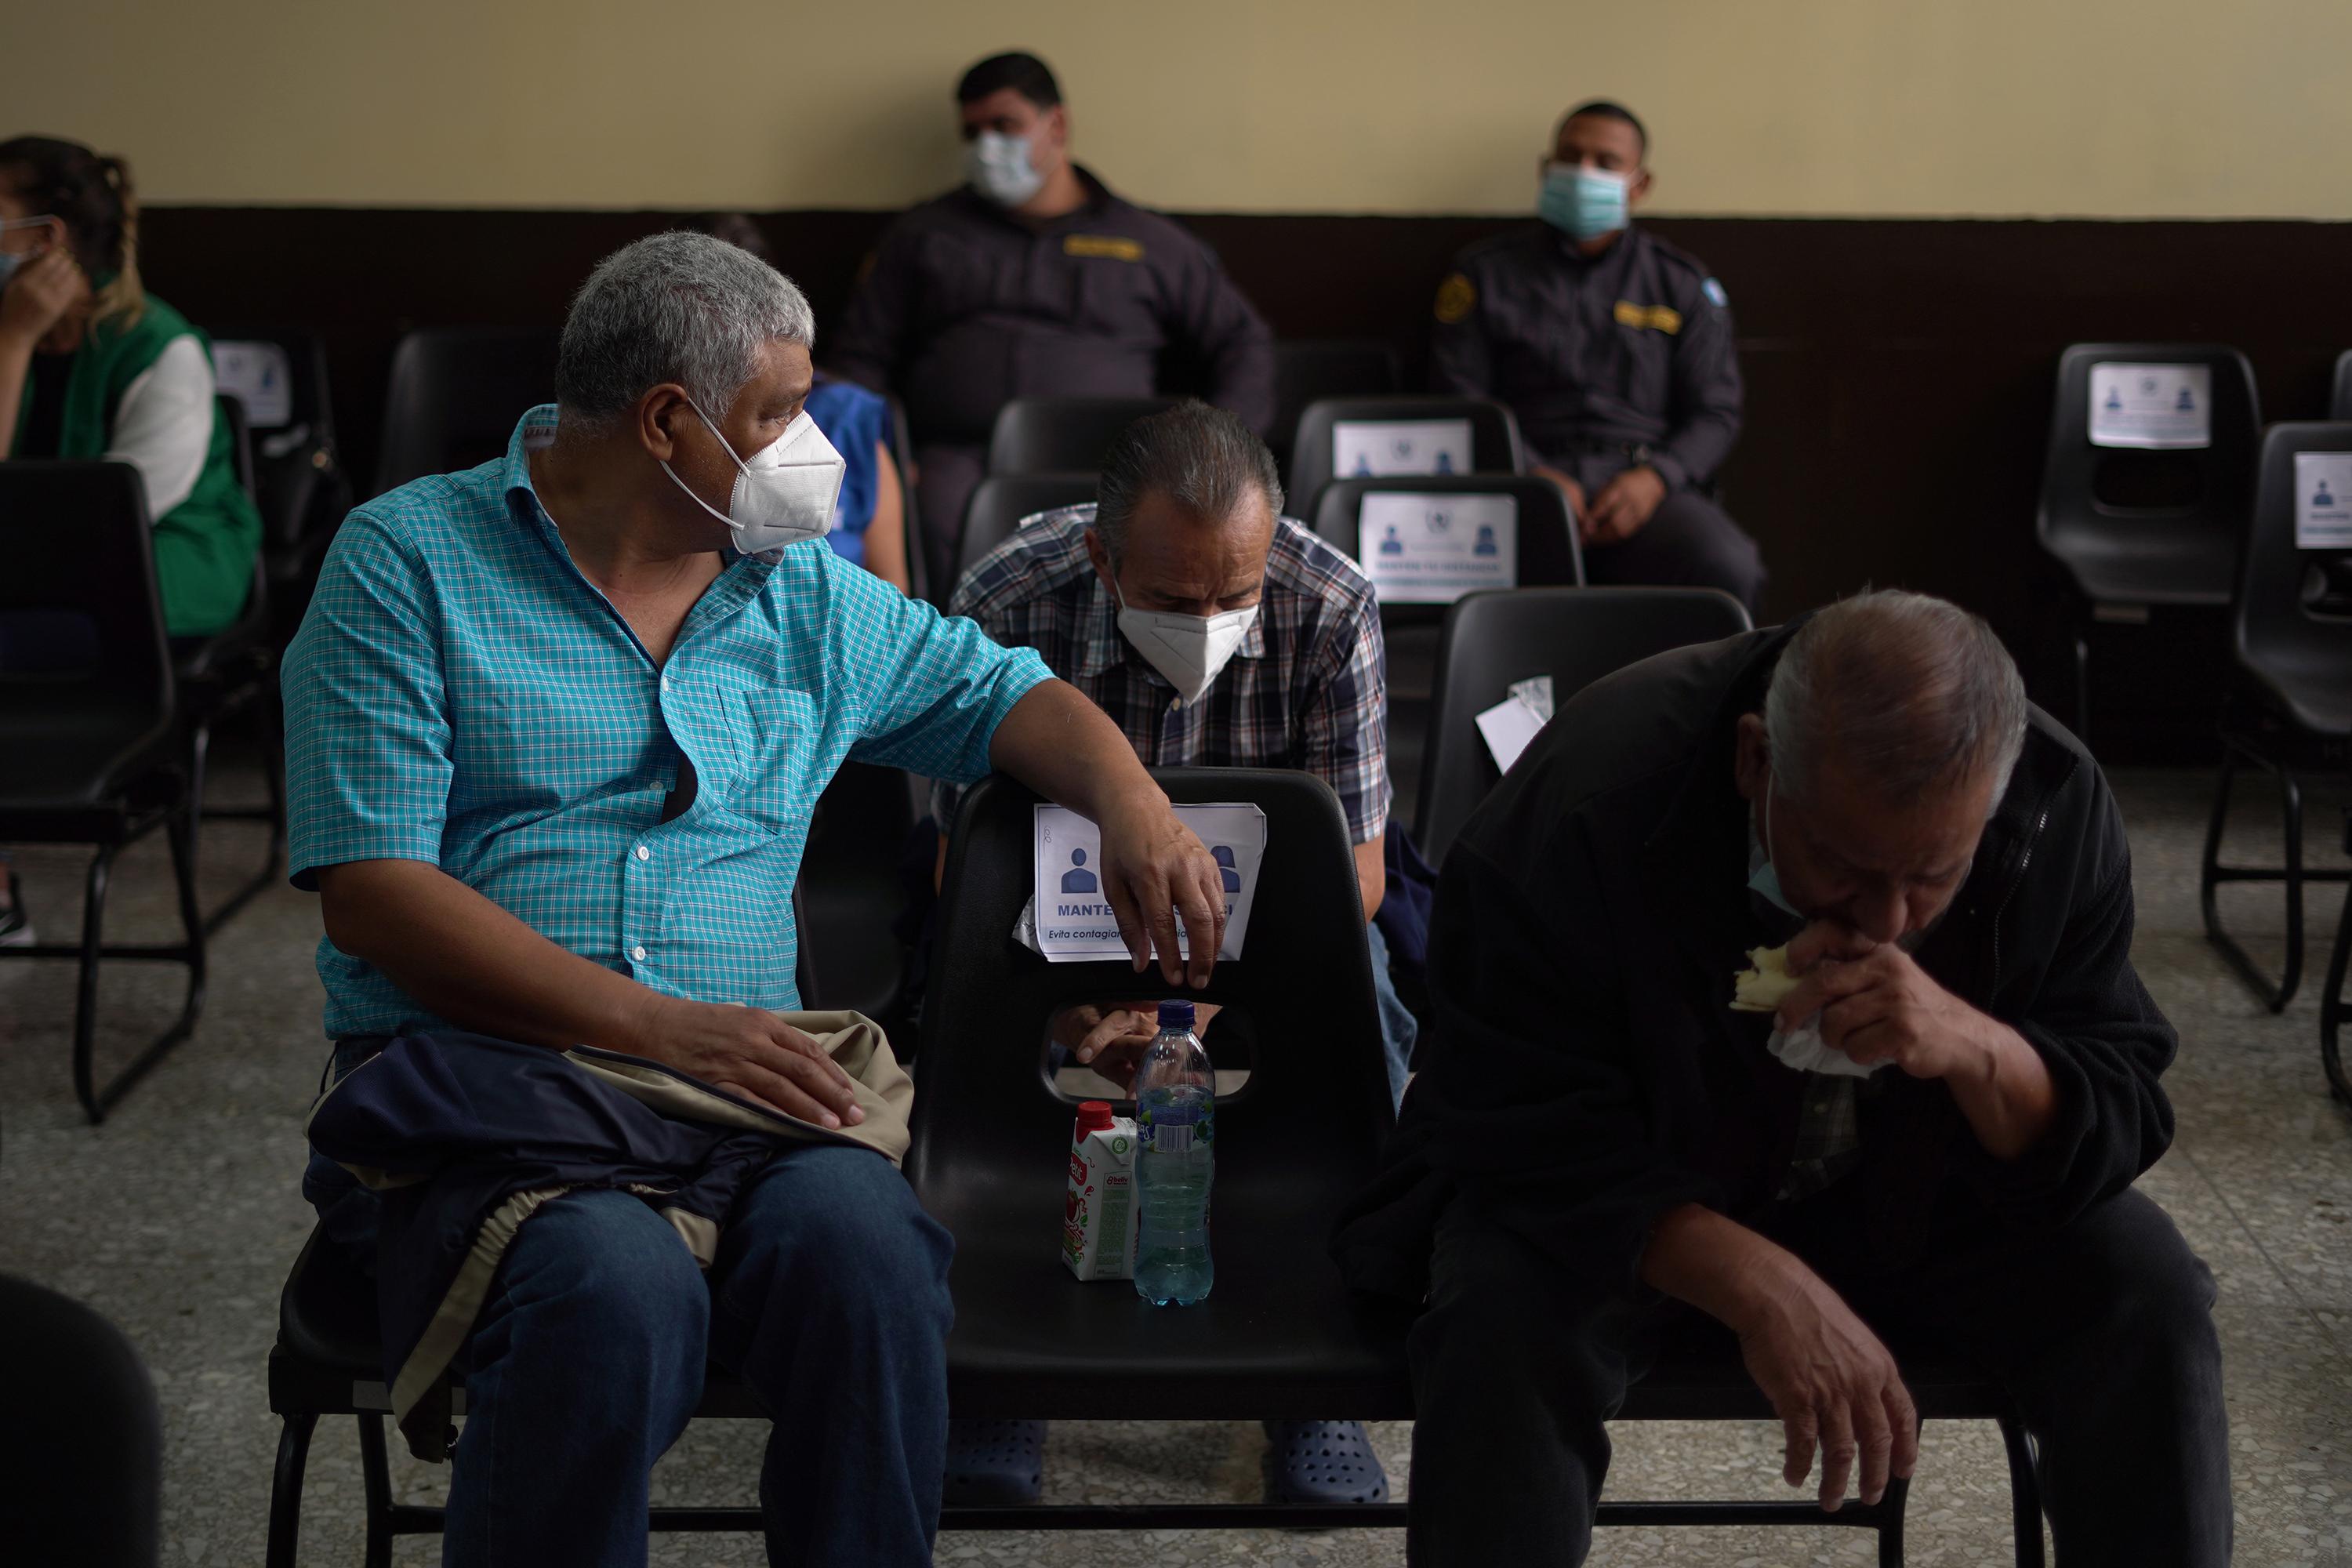 Un Tribunal de Mayor Riesgo de Guatemala celebró una audiencia preliminar el 7 de junio de 2021 por los cargos contra más de una docena de militares y policías retirados por la presunta tortura, desaparición forzada y asesinato de al menos 195 presuntos disidentes políticos nombrados en secreto. lista negra militar entre 1983 y 1985. El caso lleva el nombre del Diario Militar o 